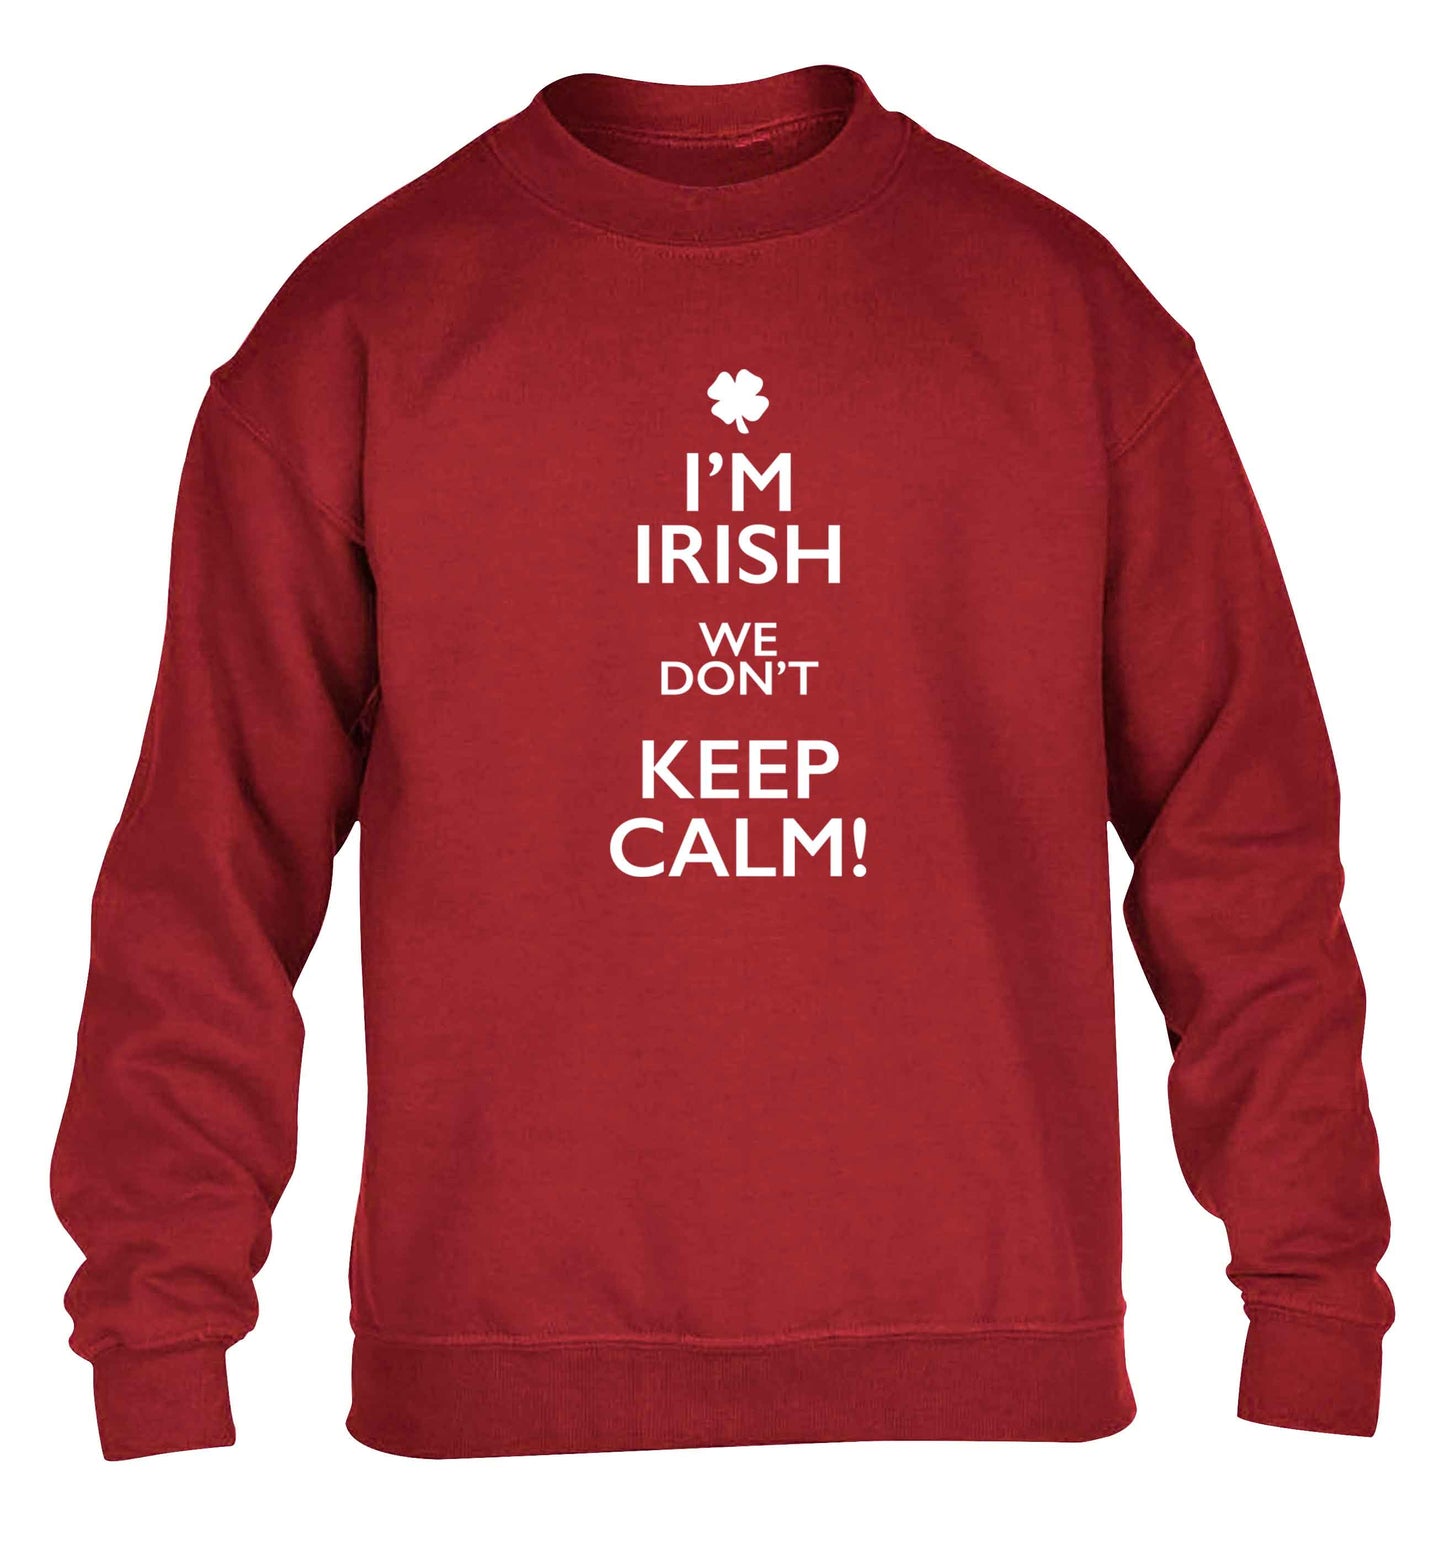 I'm Irish we don't keep calm children's grey sweater 12-13 Years